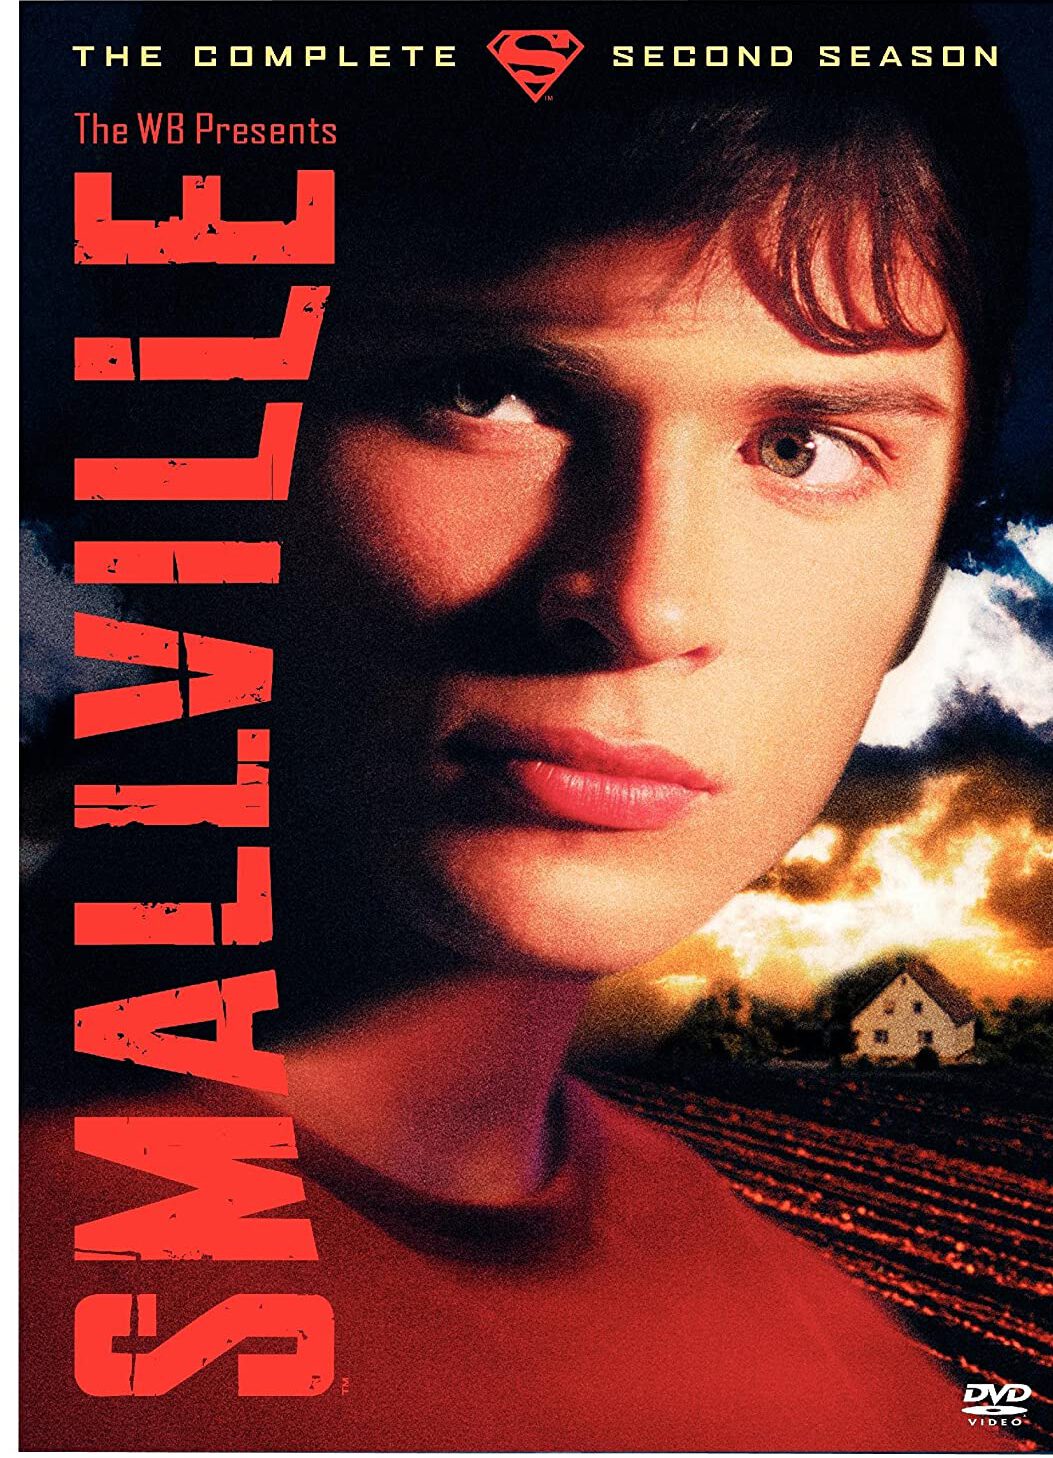 ดูหนังออนไลน์ฟรี Smallville สมอลวิลล์ หนุ่มน้อยซุปเปอร์แมน ปี 2 ตอนที่ 15